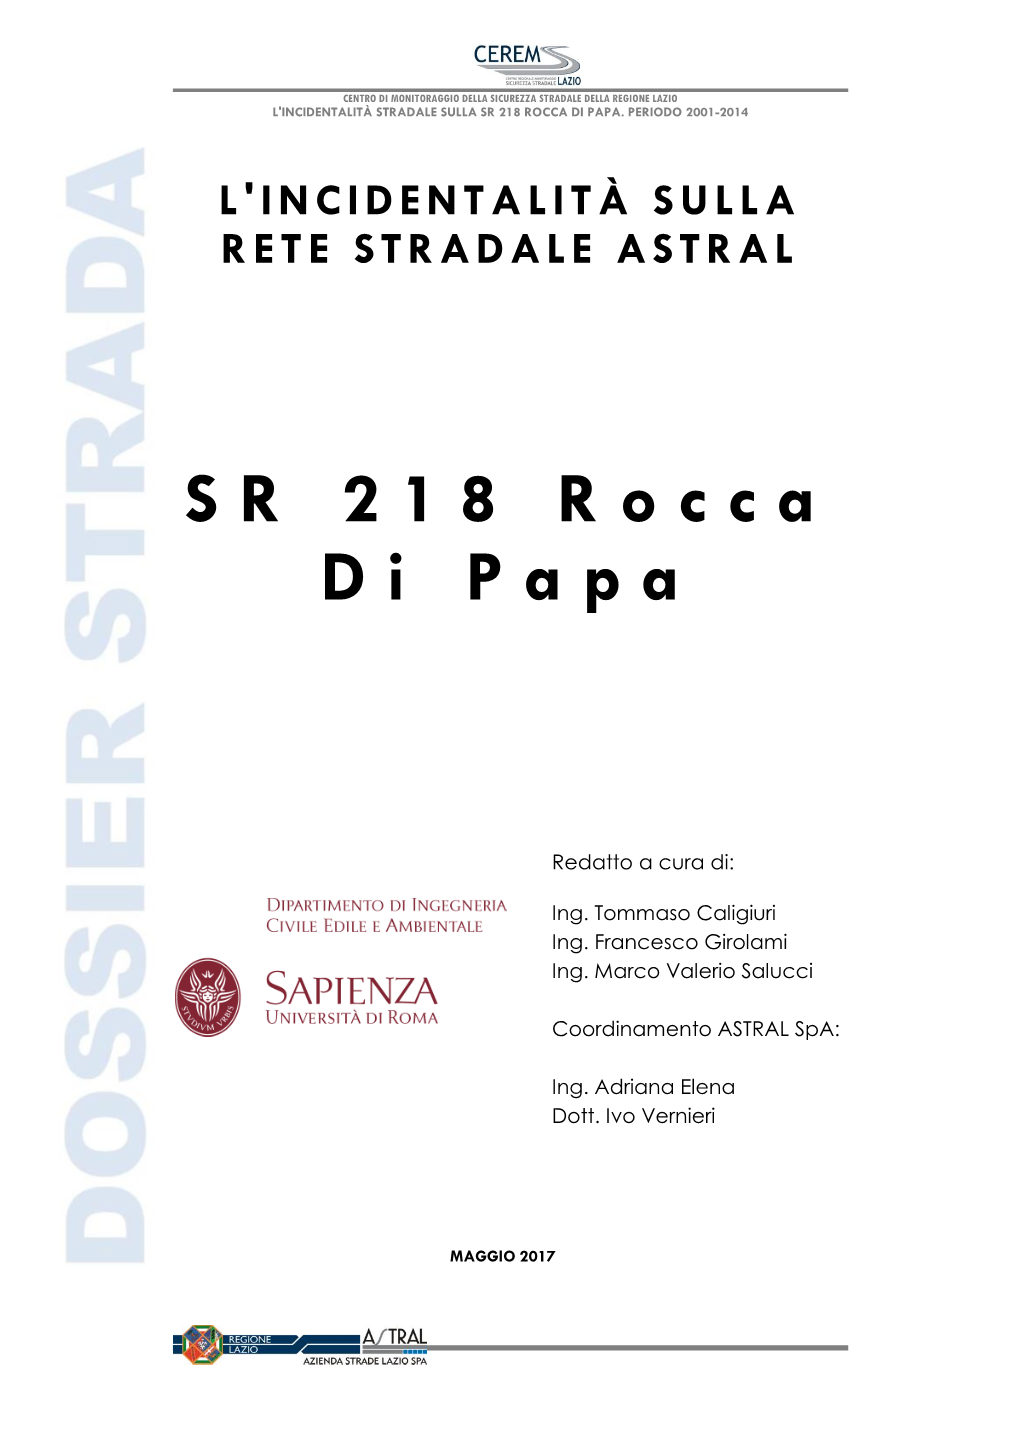 Sr 218 Rocca Di Papa